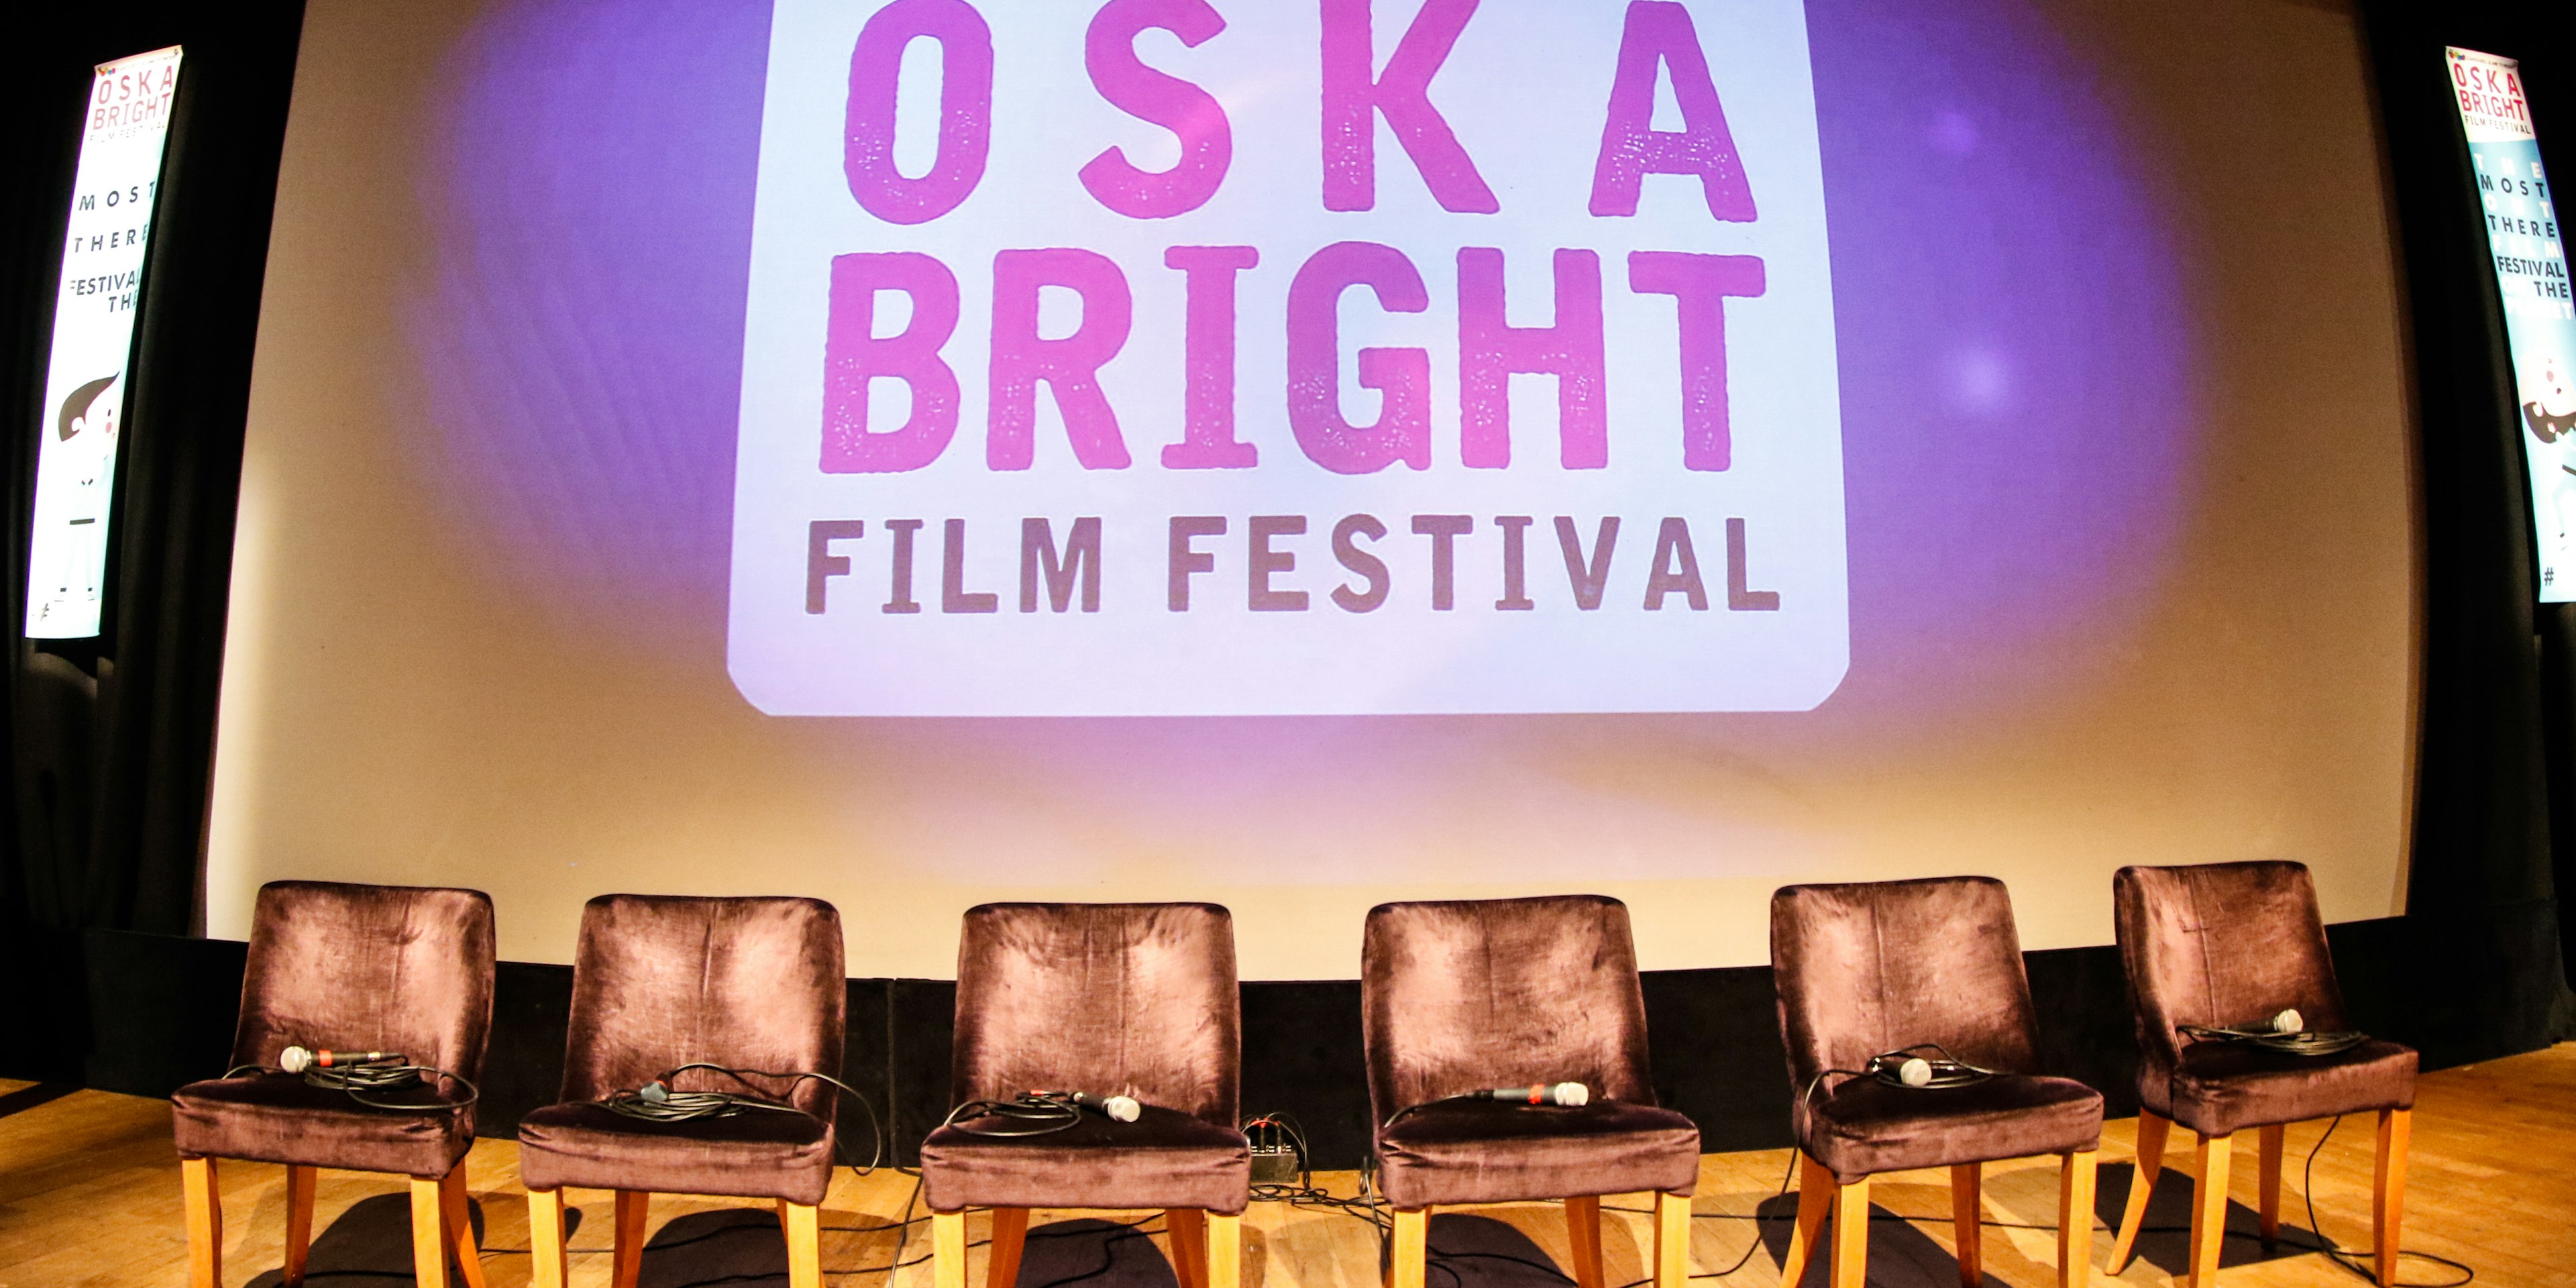 Oska Bright Film Festival